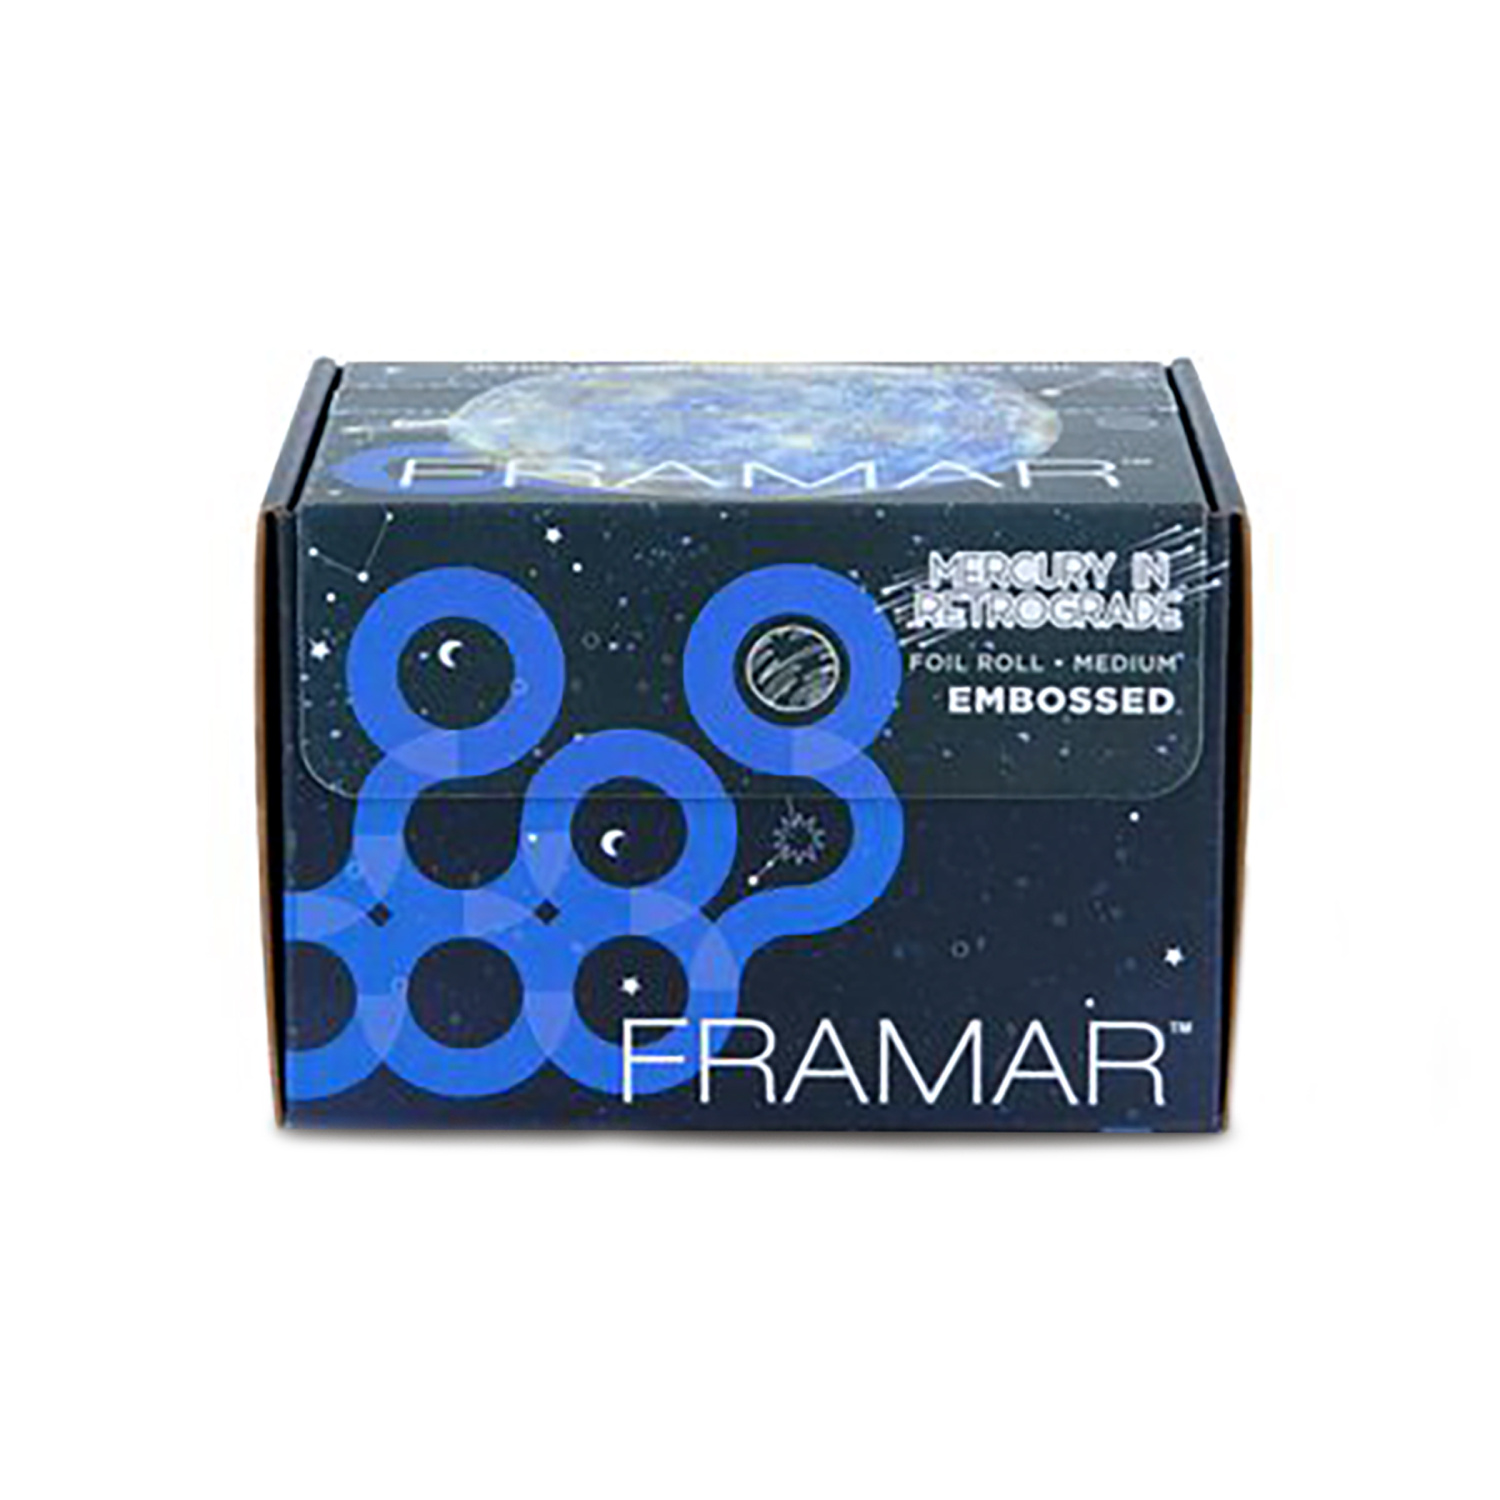 Framar Embossed Roll Mercury in Retrograde - интернет-магазин профессиональной косметики Spadream, изображение 47600